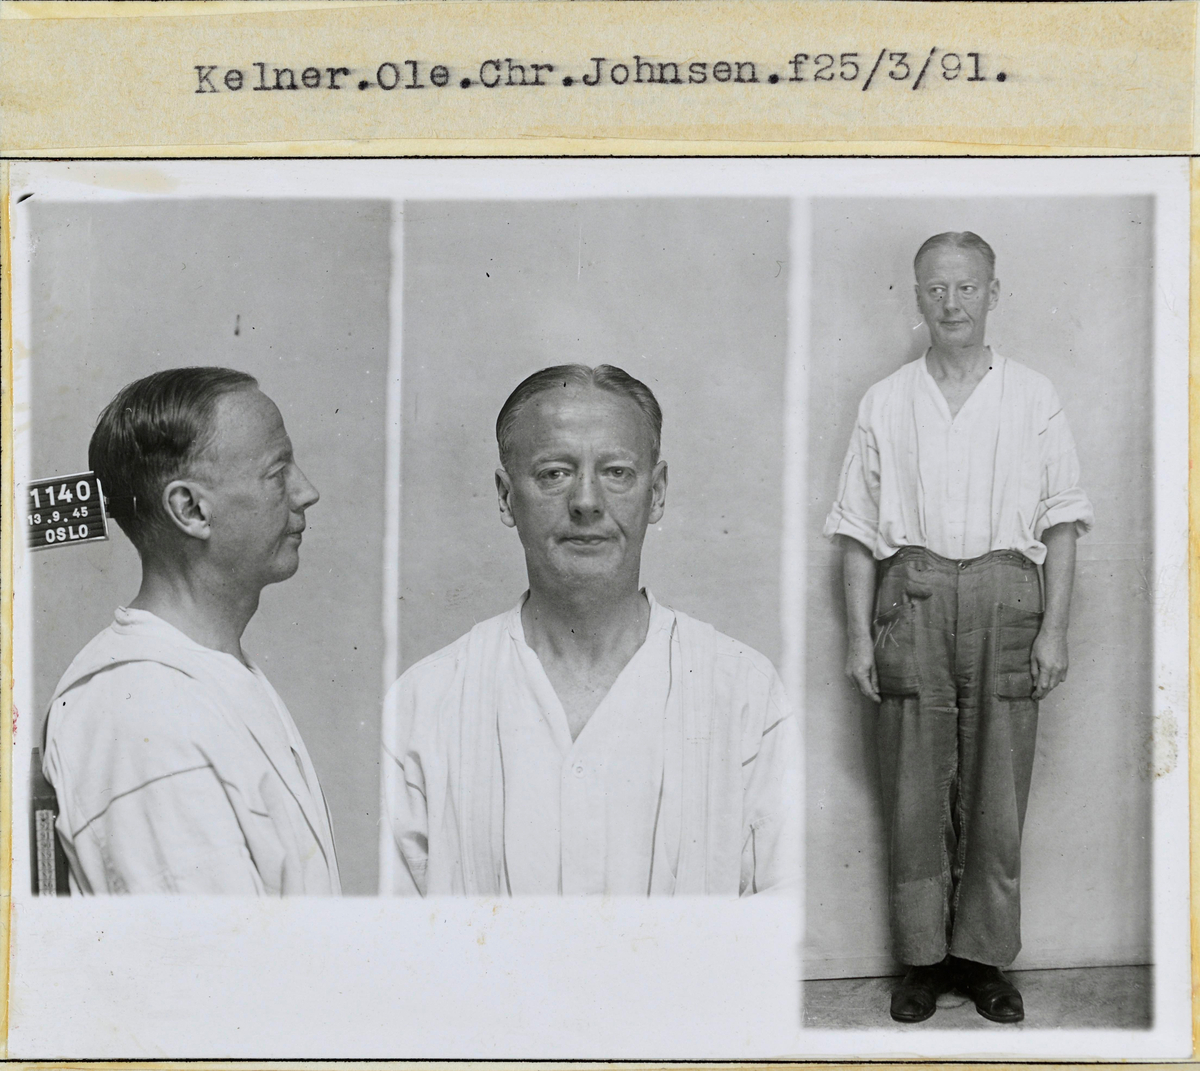 Forbryterportrett av kelner Ole C. Johnsen